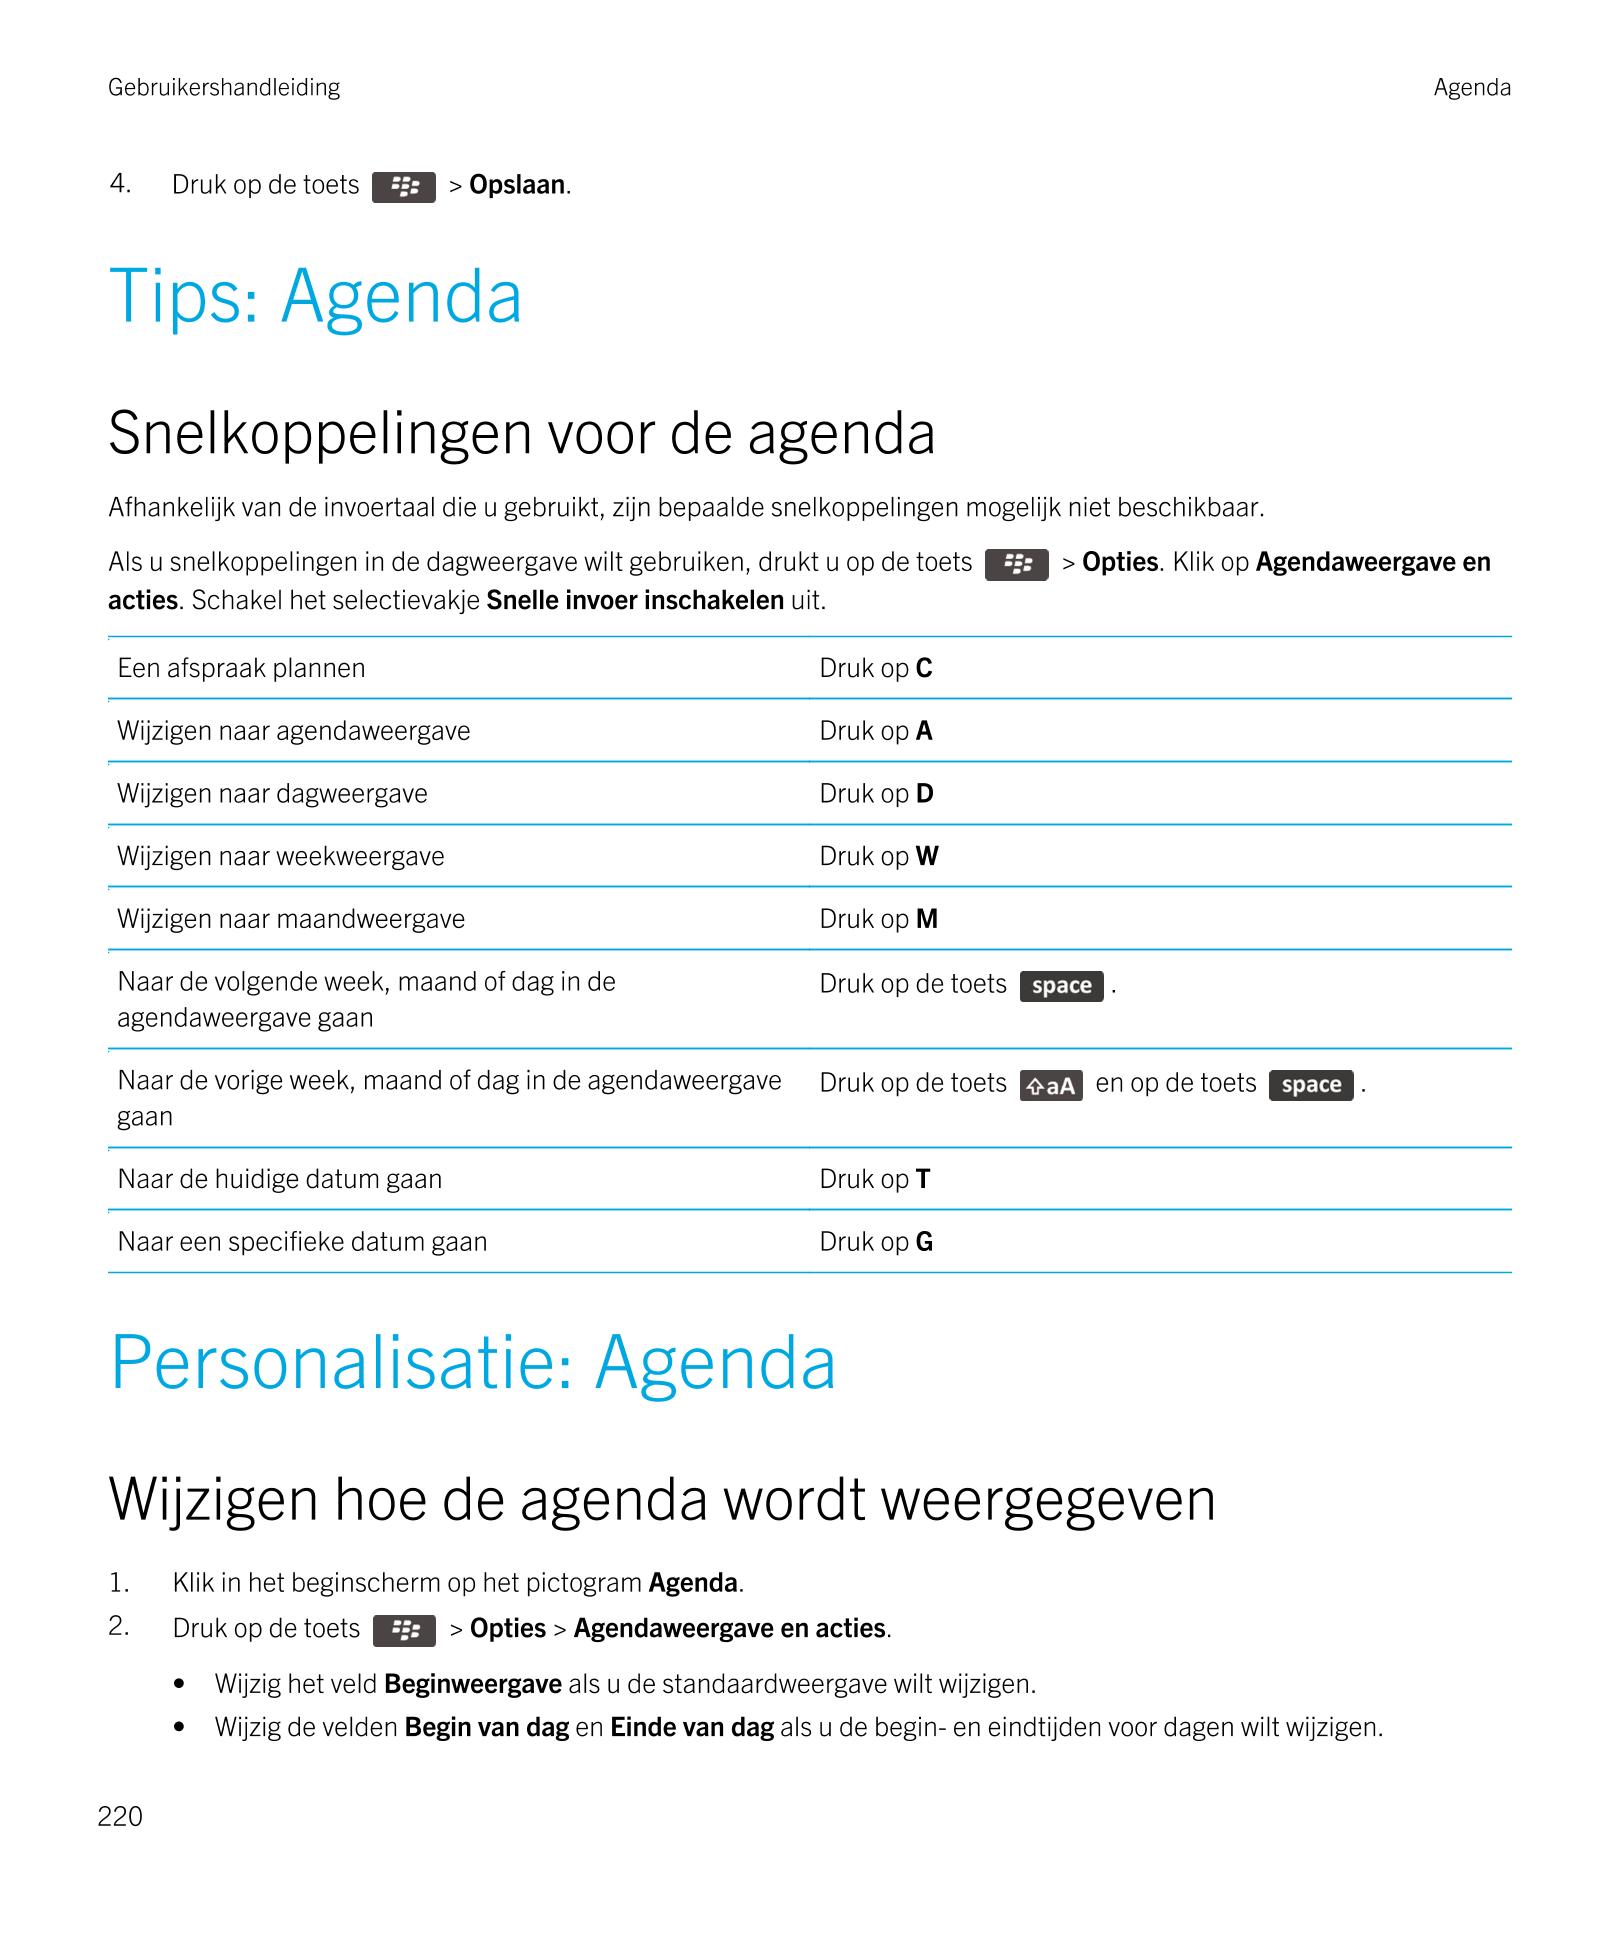 Gebruikershandleiding Agenda
4. Druk op de toets   >  Opslaan. 
Tips: Agenda
Snelkoppelingen voor de agenda
Afhankelijk van de i